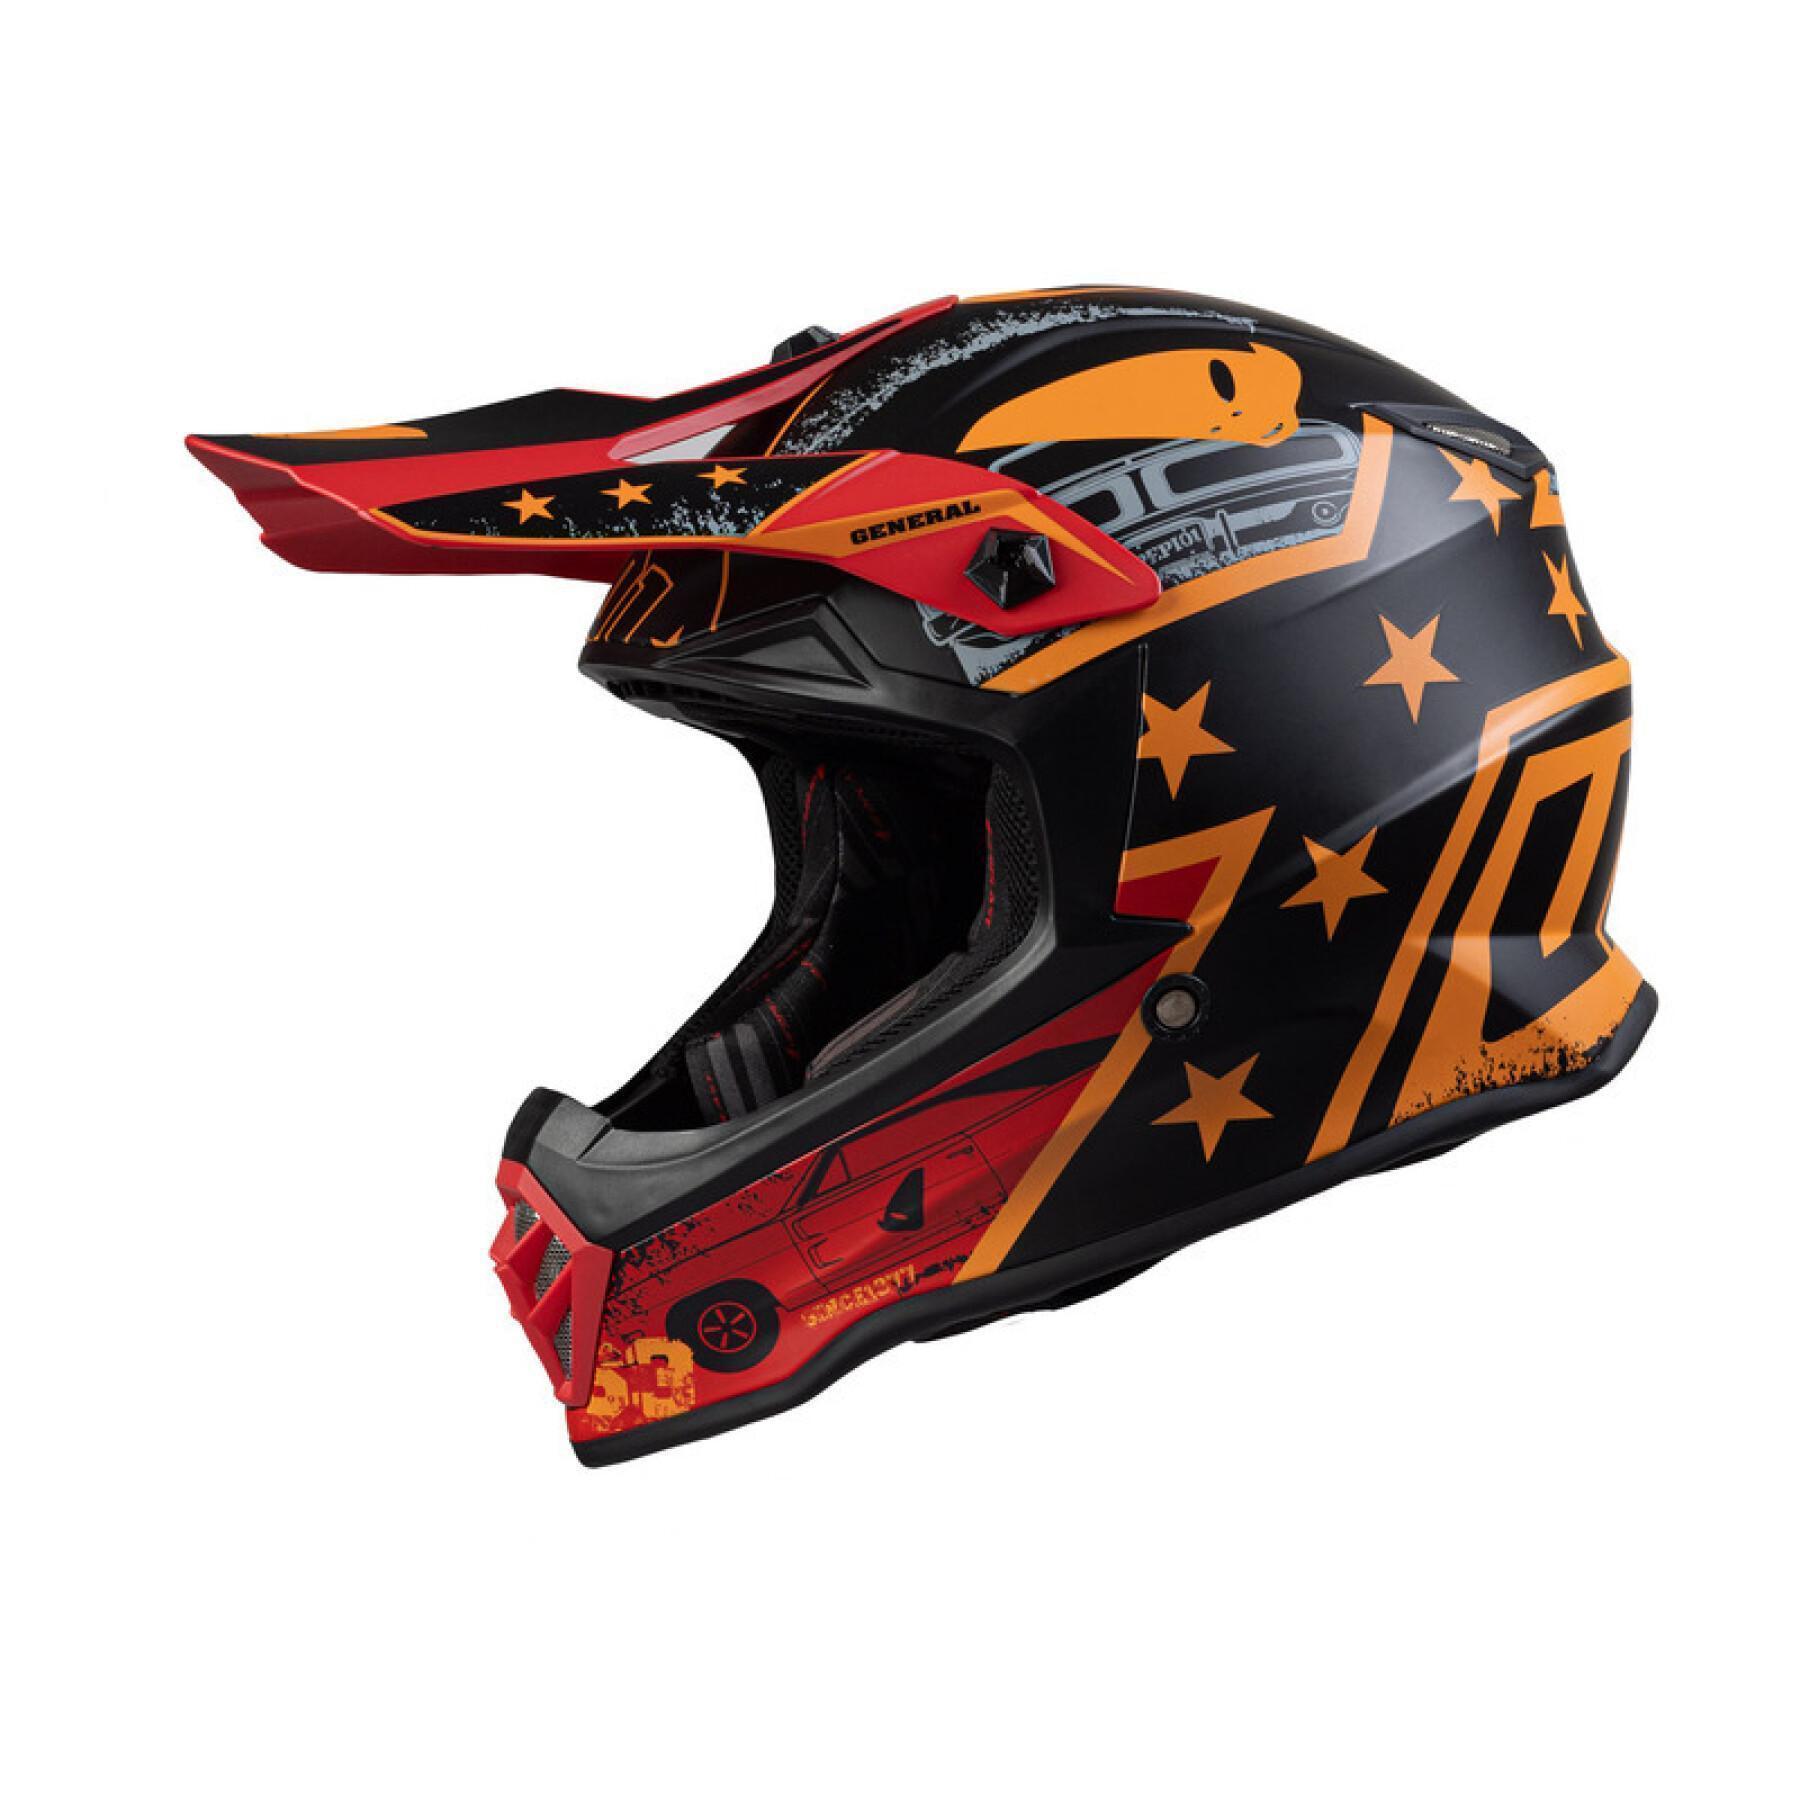 Motorcycle helmet UFO General